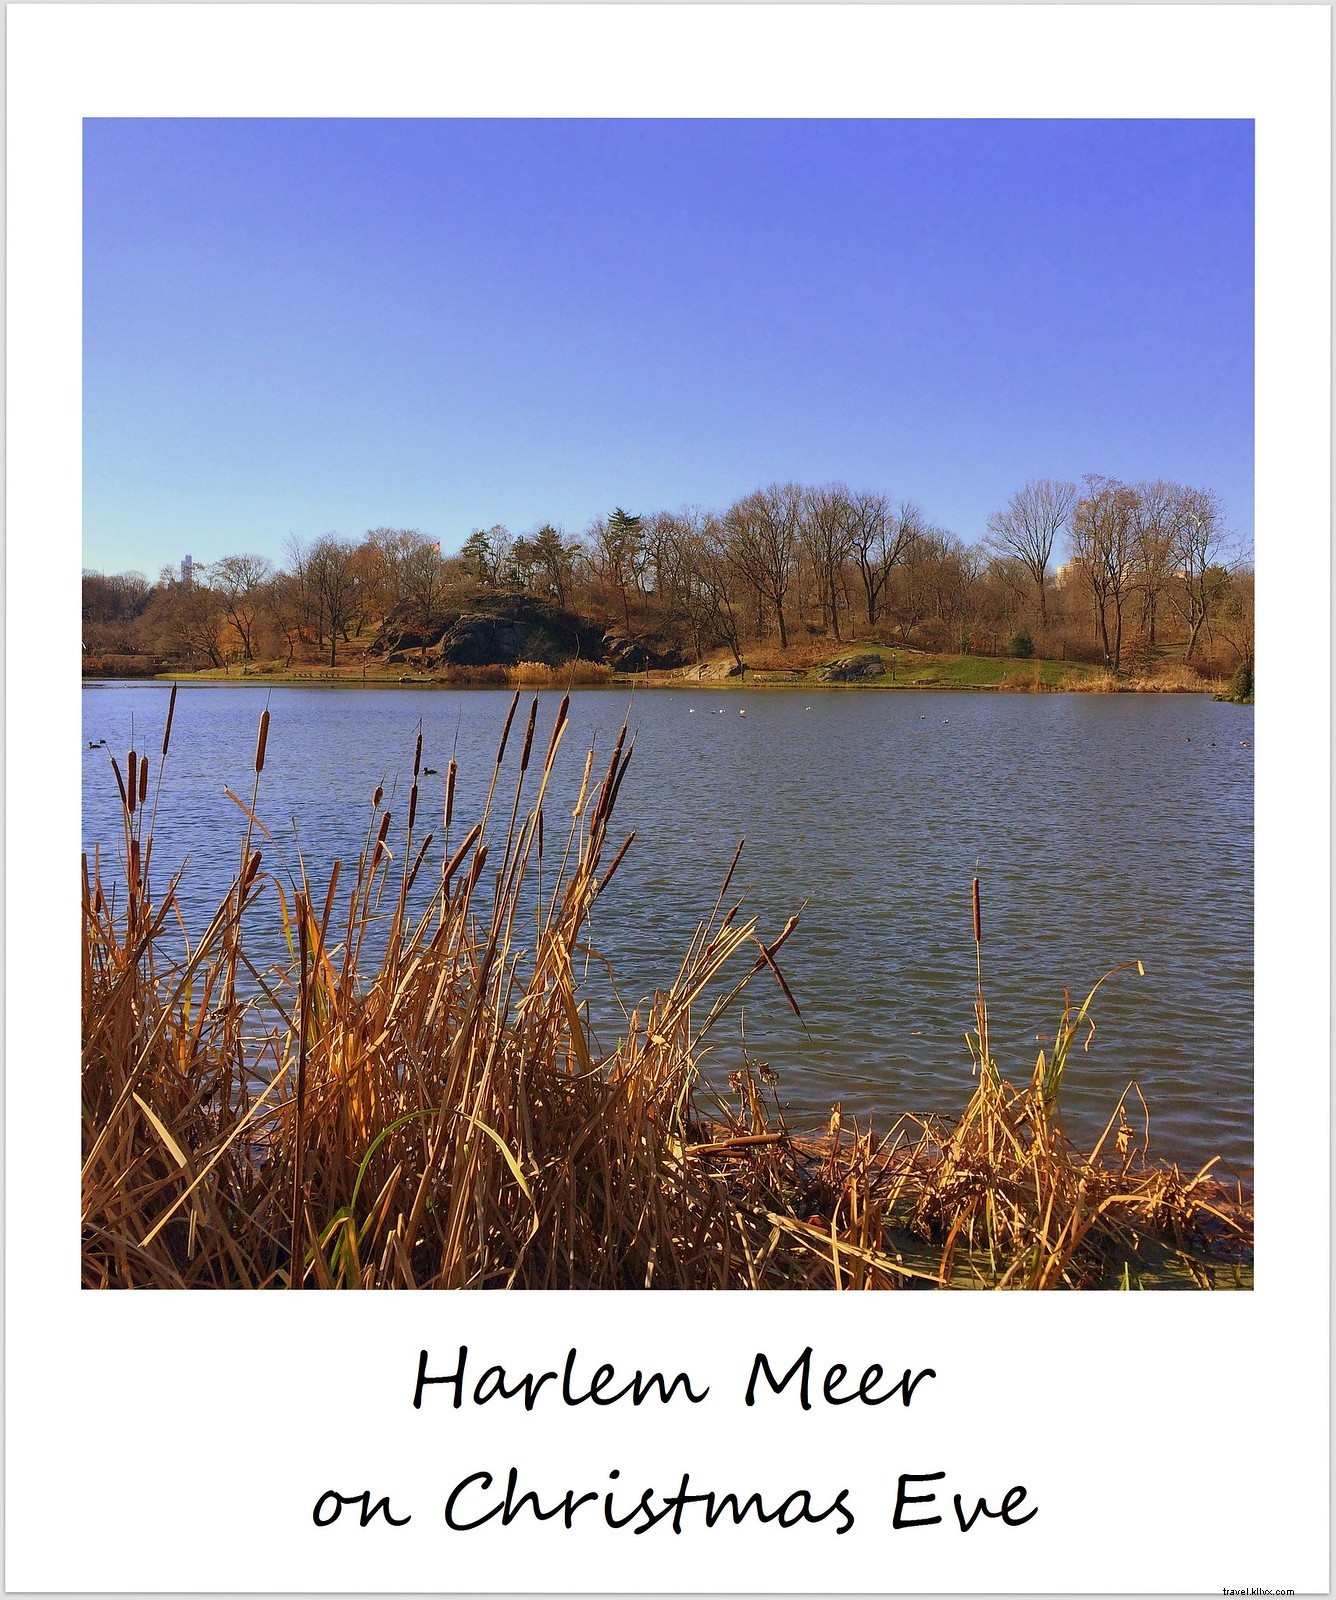 Polaroid minggu ini:Harlem Meer pada hari Desember yang cerah